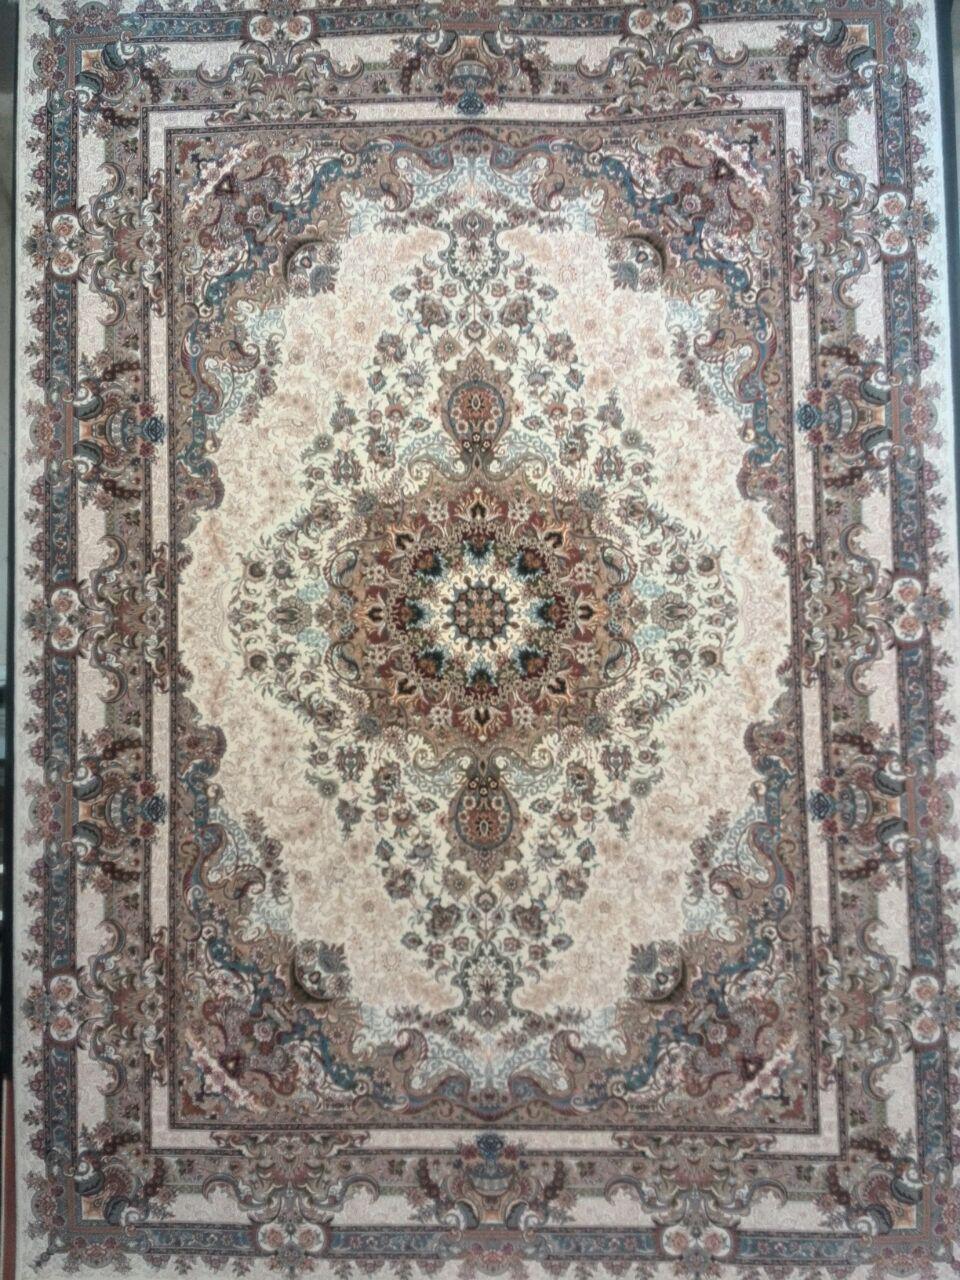 هیوا کرم/دنیای فرش/فرش ایرانی/فرش ماشینی/donyayfarsh